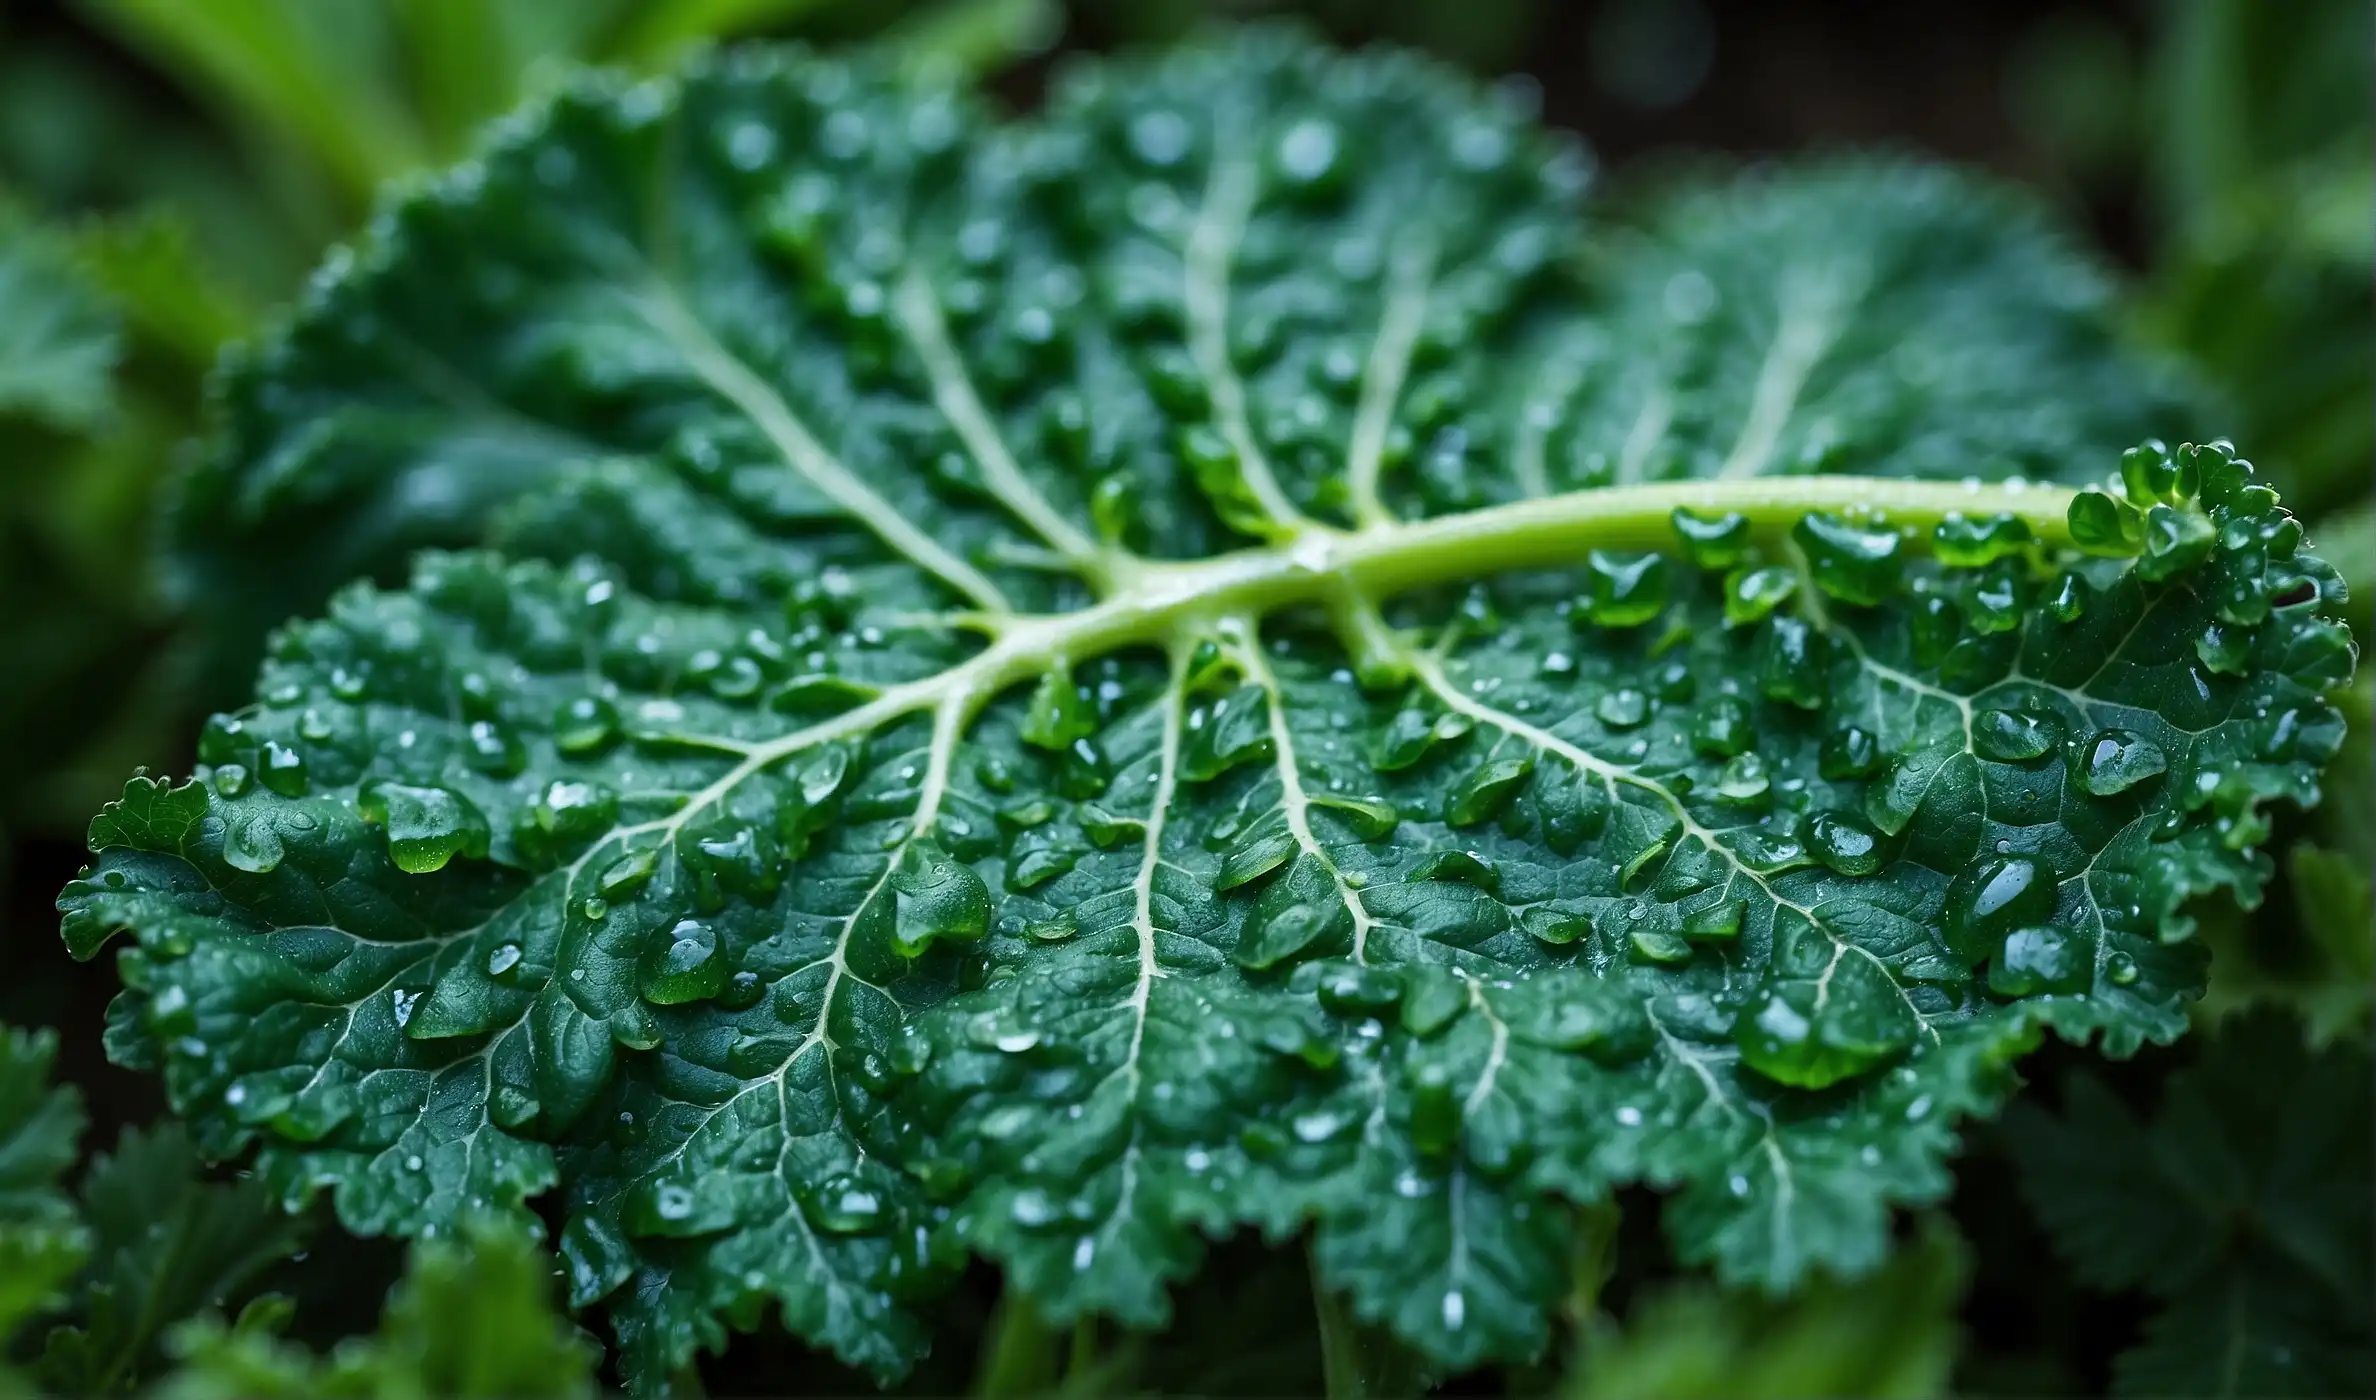 Kale leaf close-up